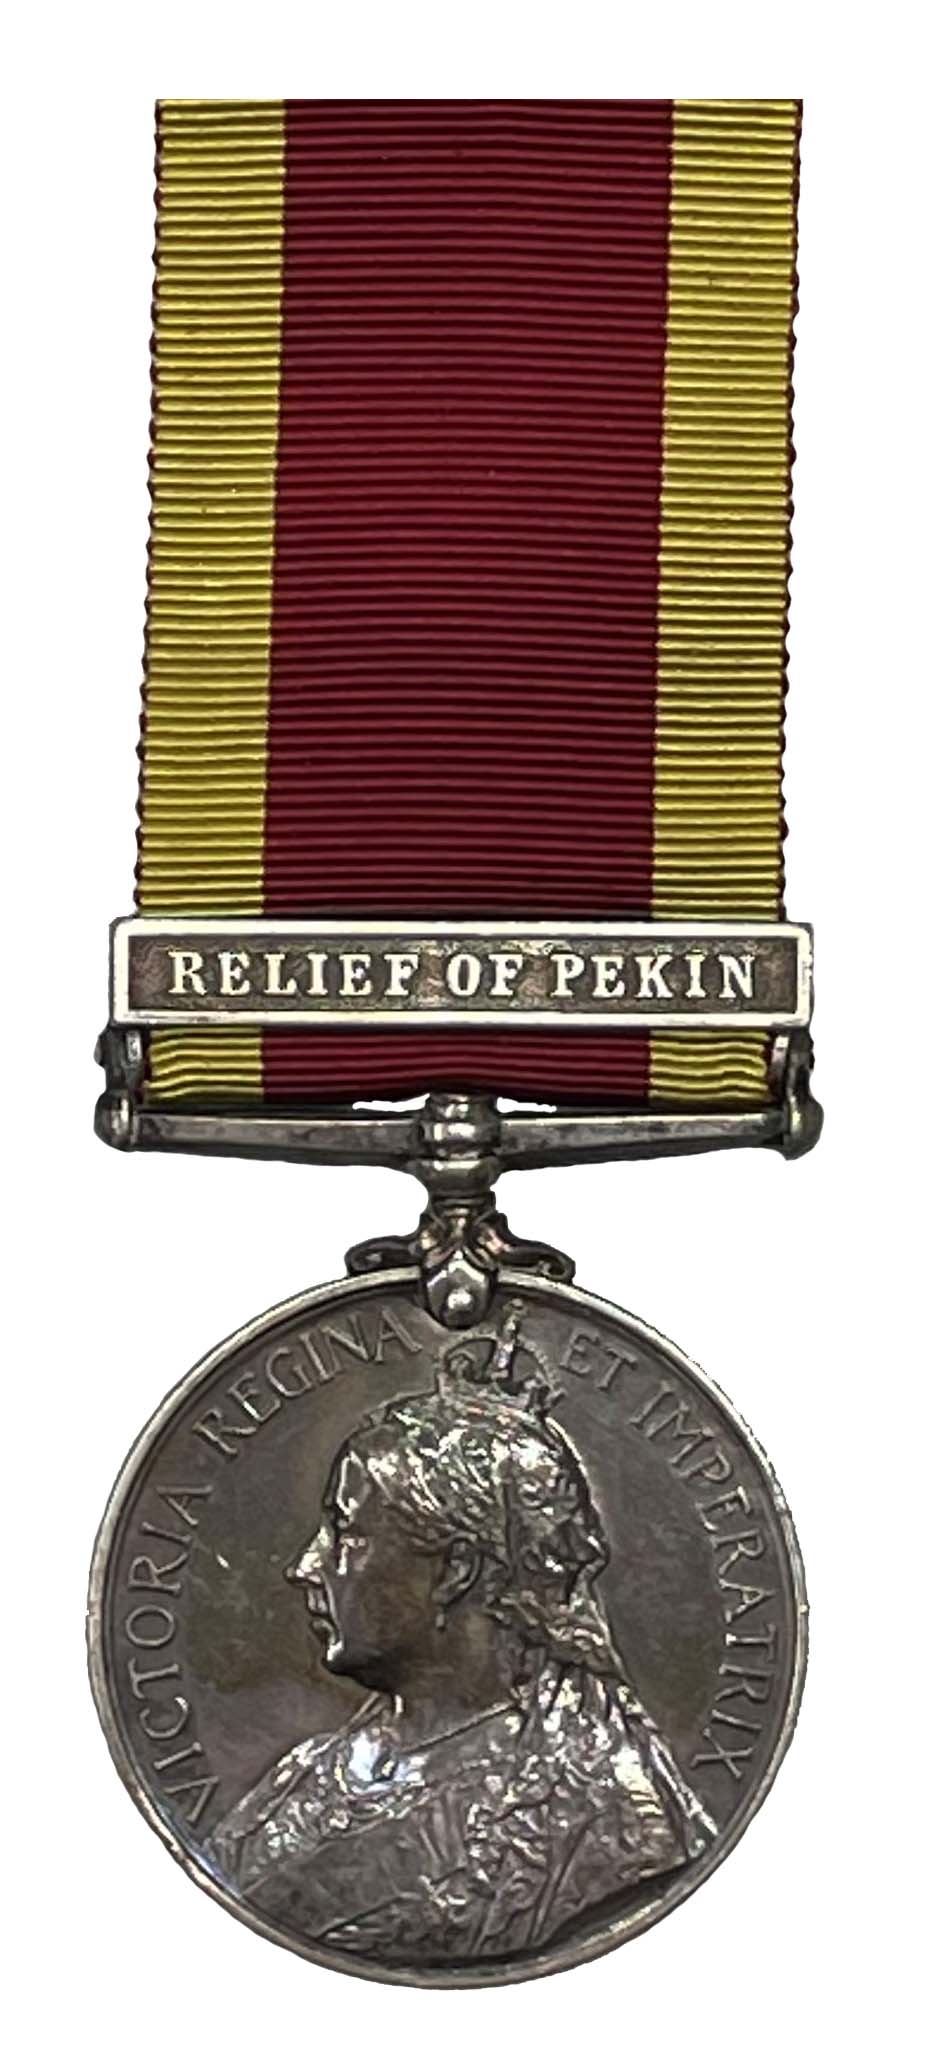 China War Medal 1900, one clasp, Relief of Pekin, to Gunner John Bubb